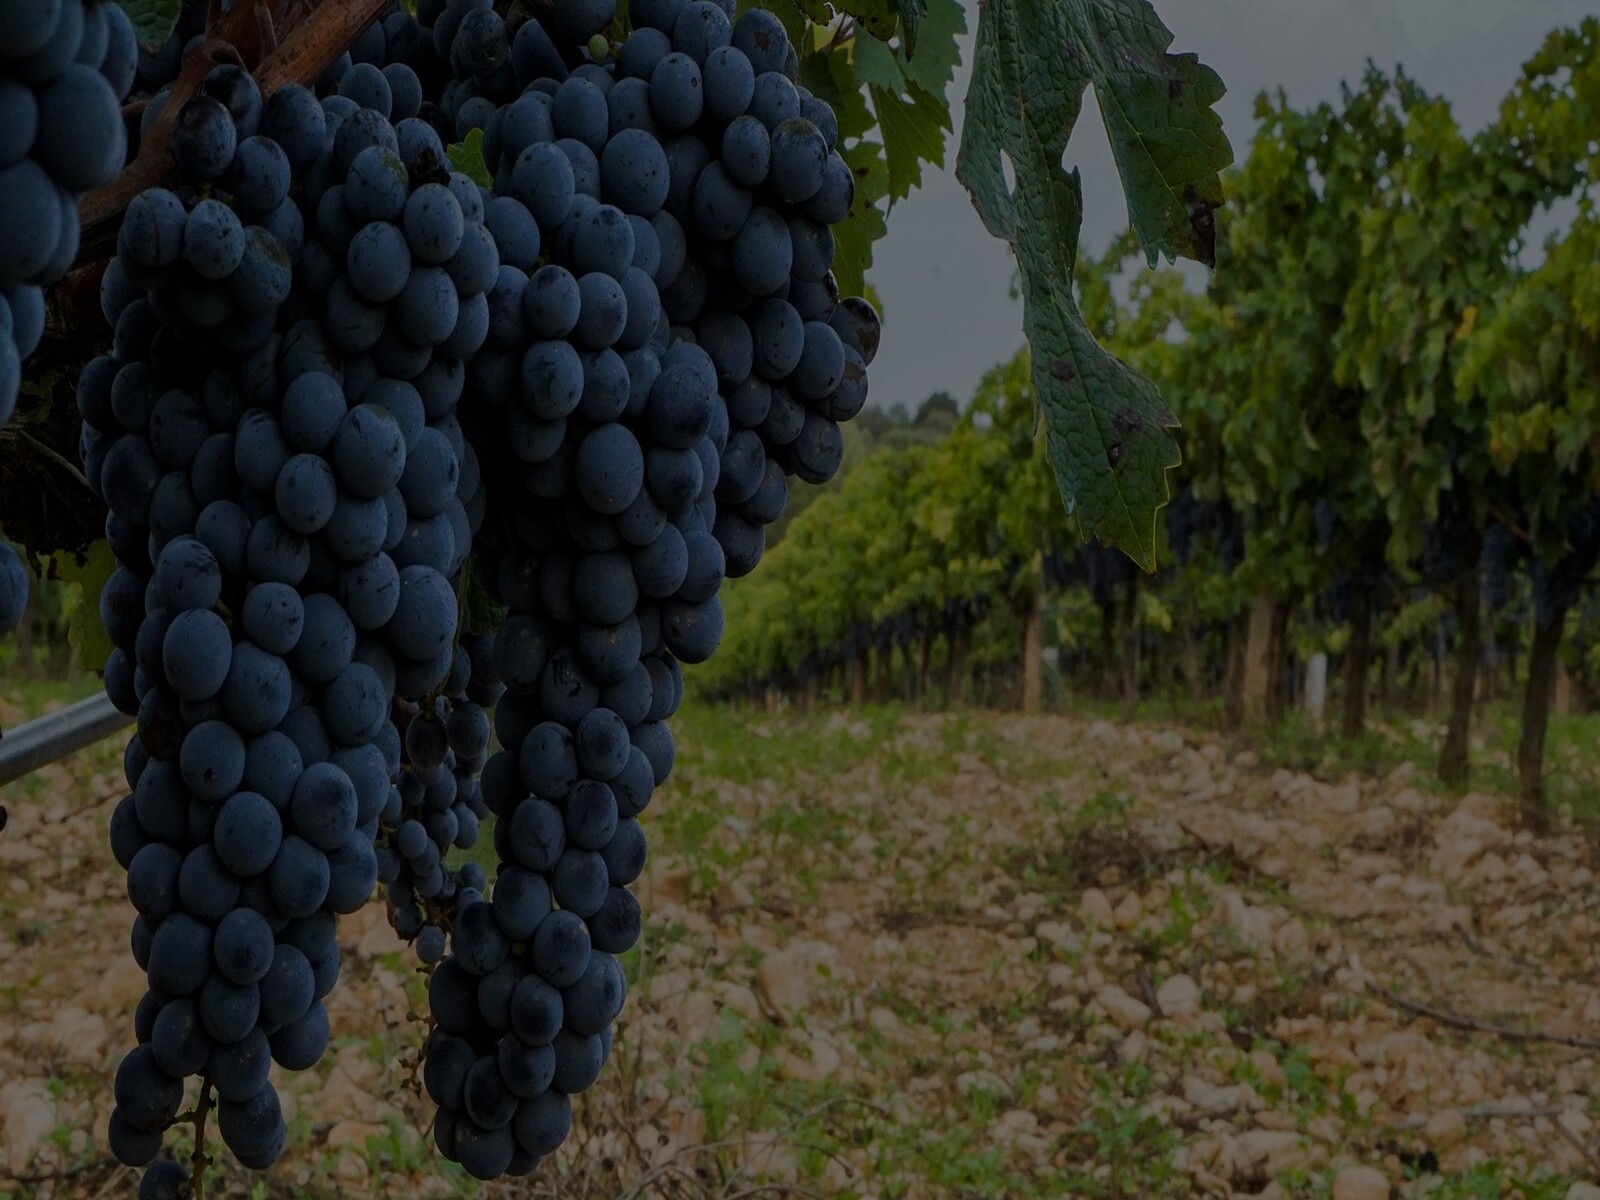 Biodiversidad y respeto por la naturalezaVolver a la viticultura y el trabajo en viña que se había practicado desde hace siglos, basándonos en el profundo conocimiento de la naturaleza y en la pasión por la fruta.